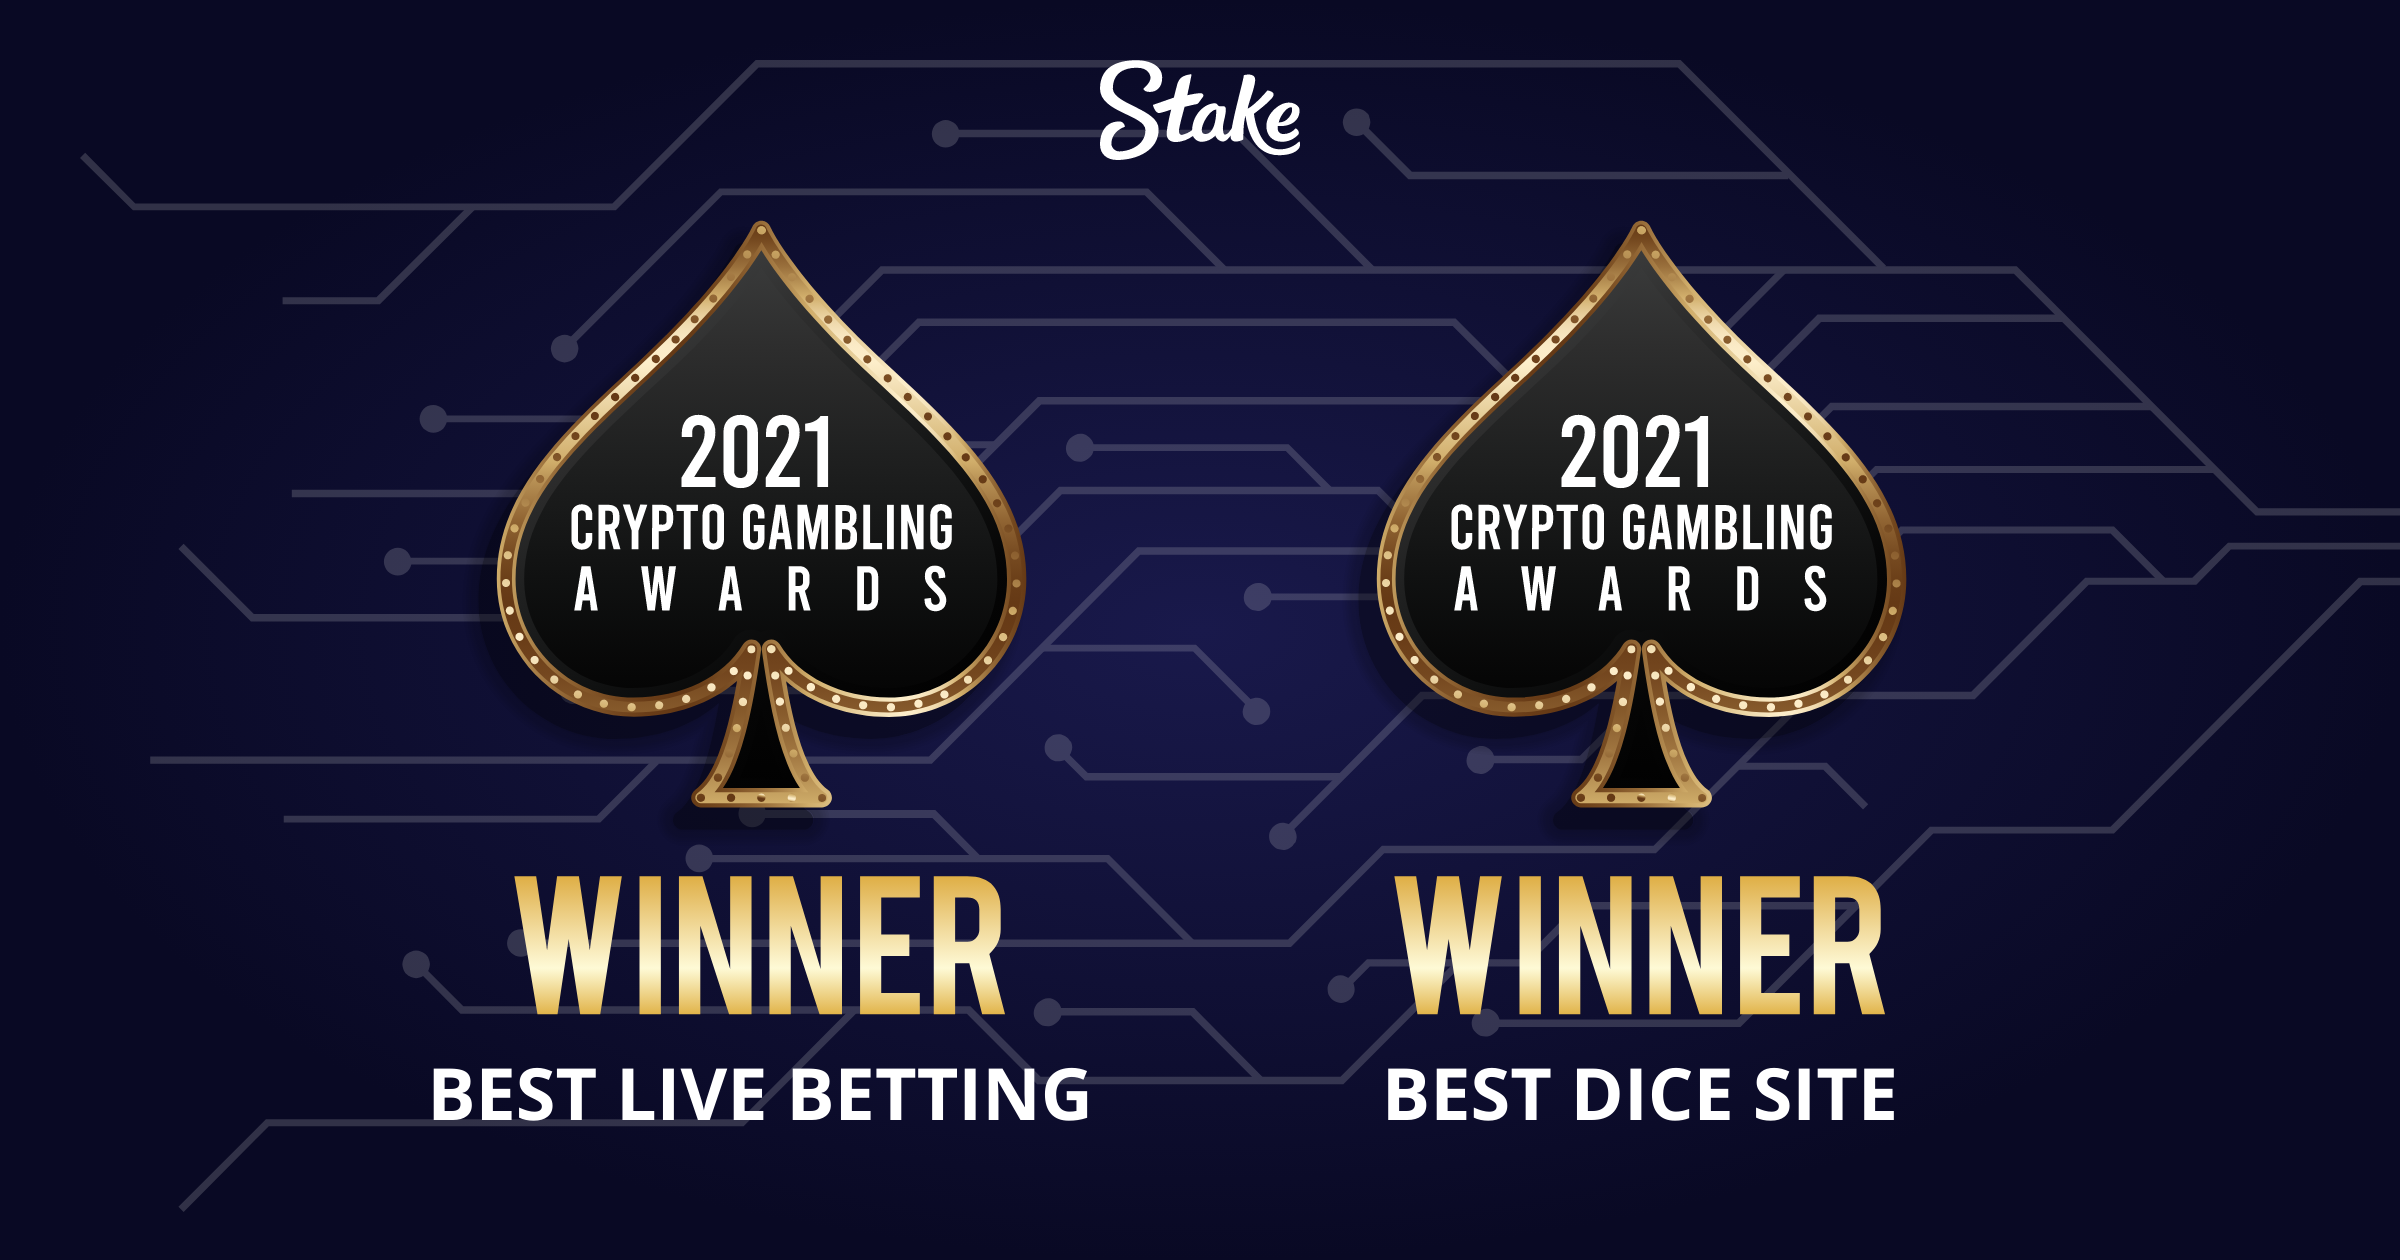 Crypto Gambling Awards won by Stake